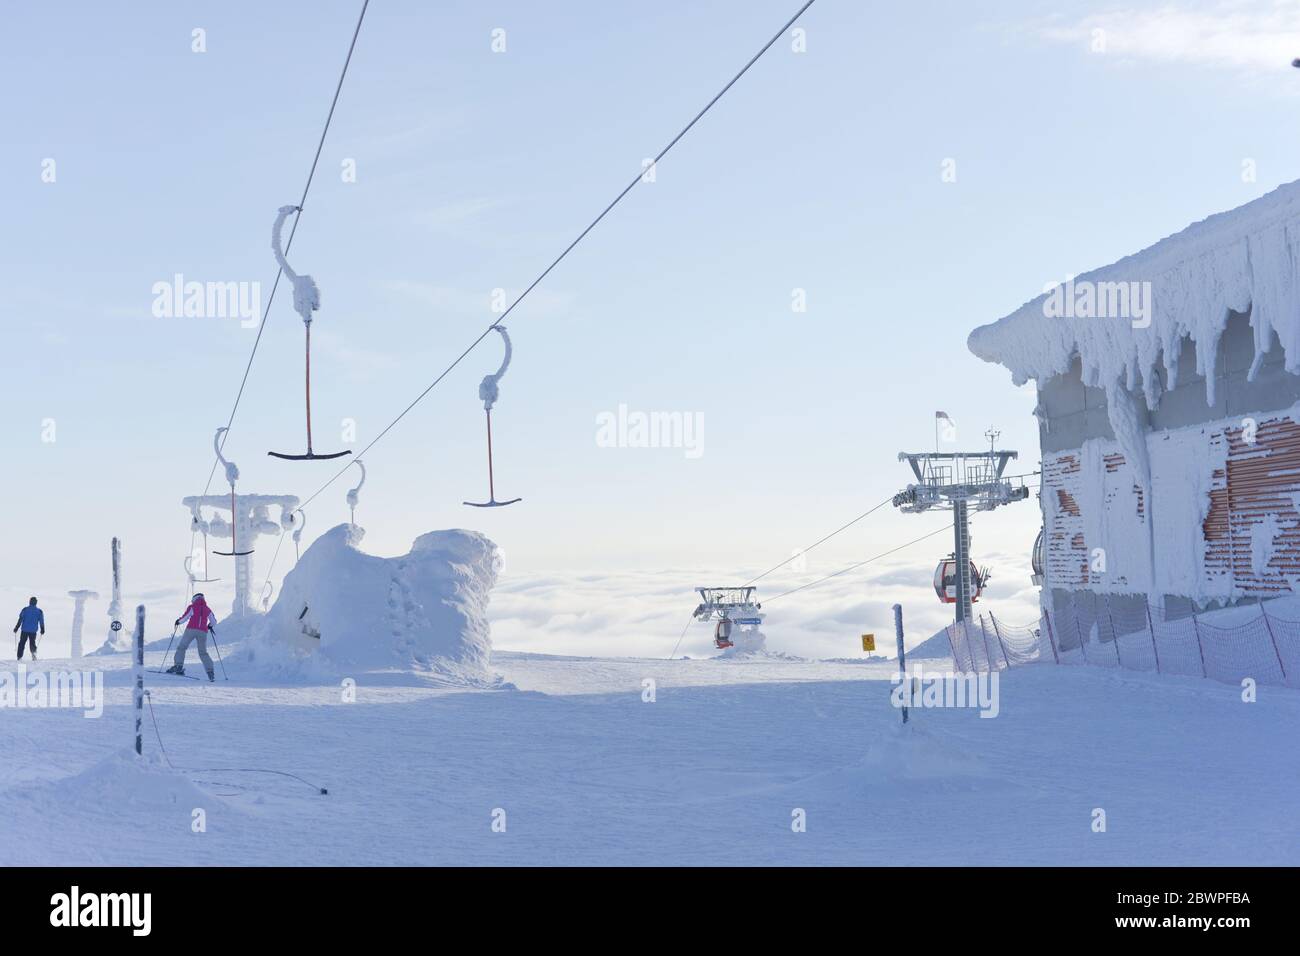 deux skieurs descendent une piste en débarqué des remontées mécaniques qui s'élèvent au-dessus des nuages dans le ciel bleu pâle. Très froid et enneigé. Banque D'Images